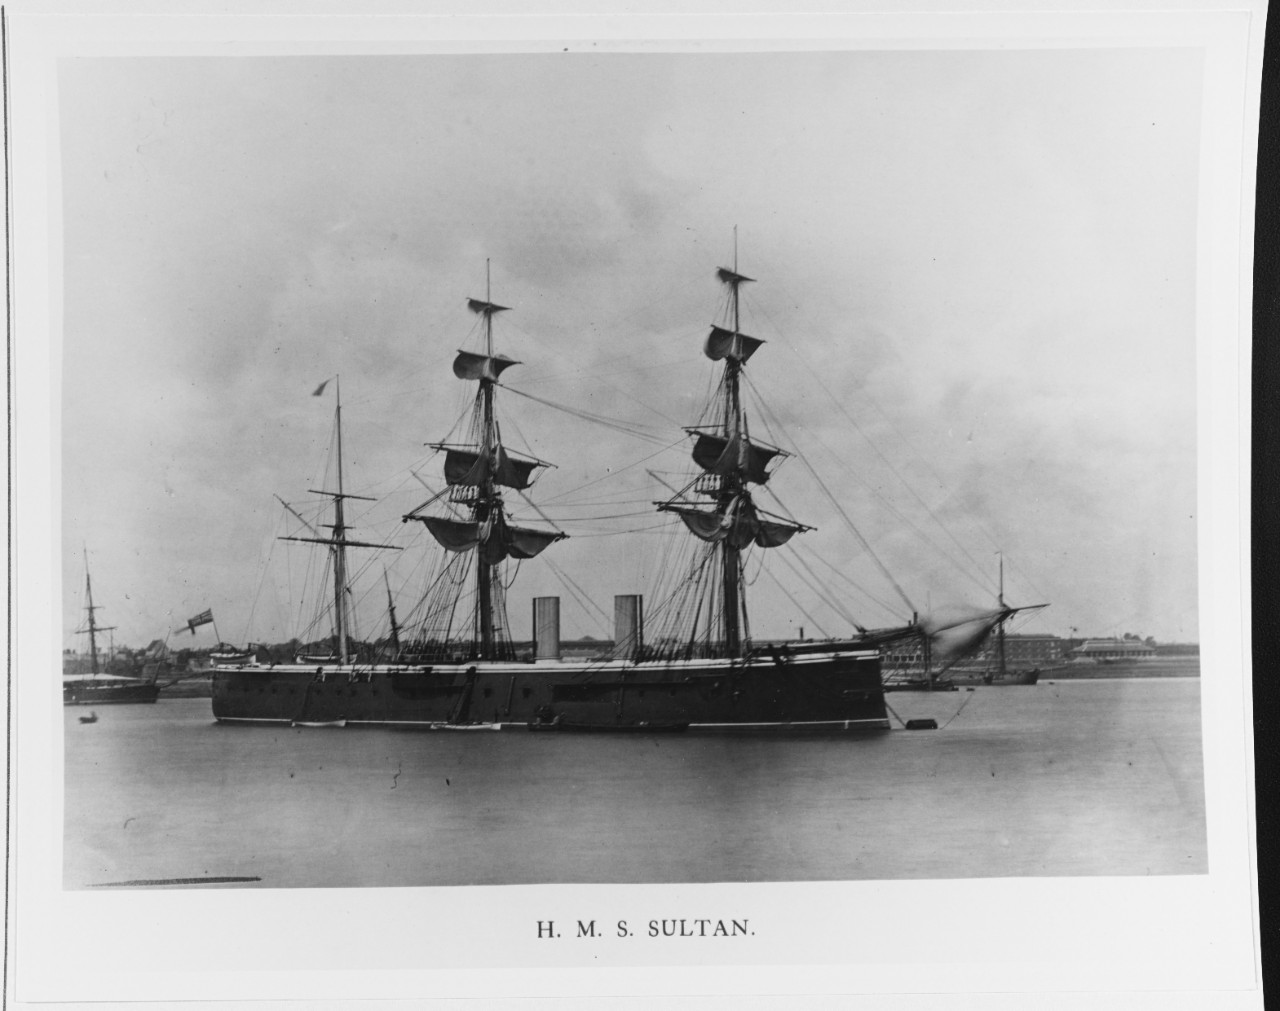 HMS SULTAN (BRITISH FRIGATE, 1870)